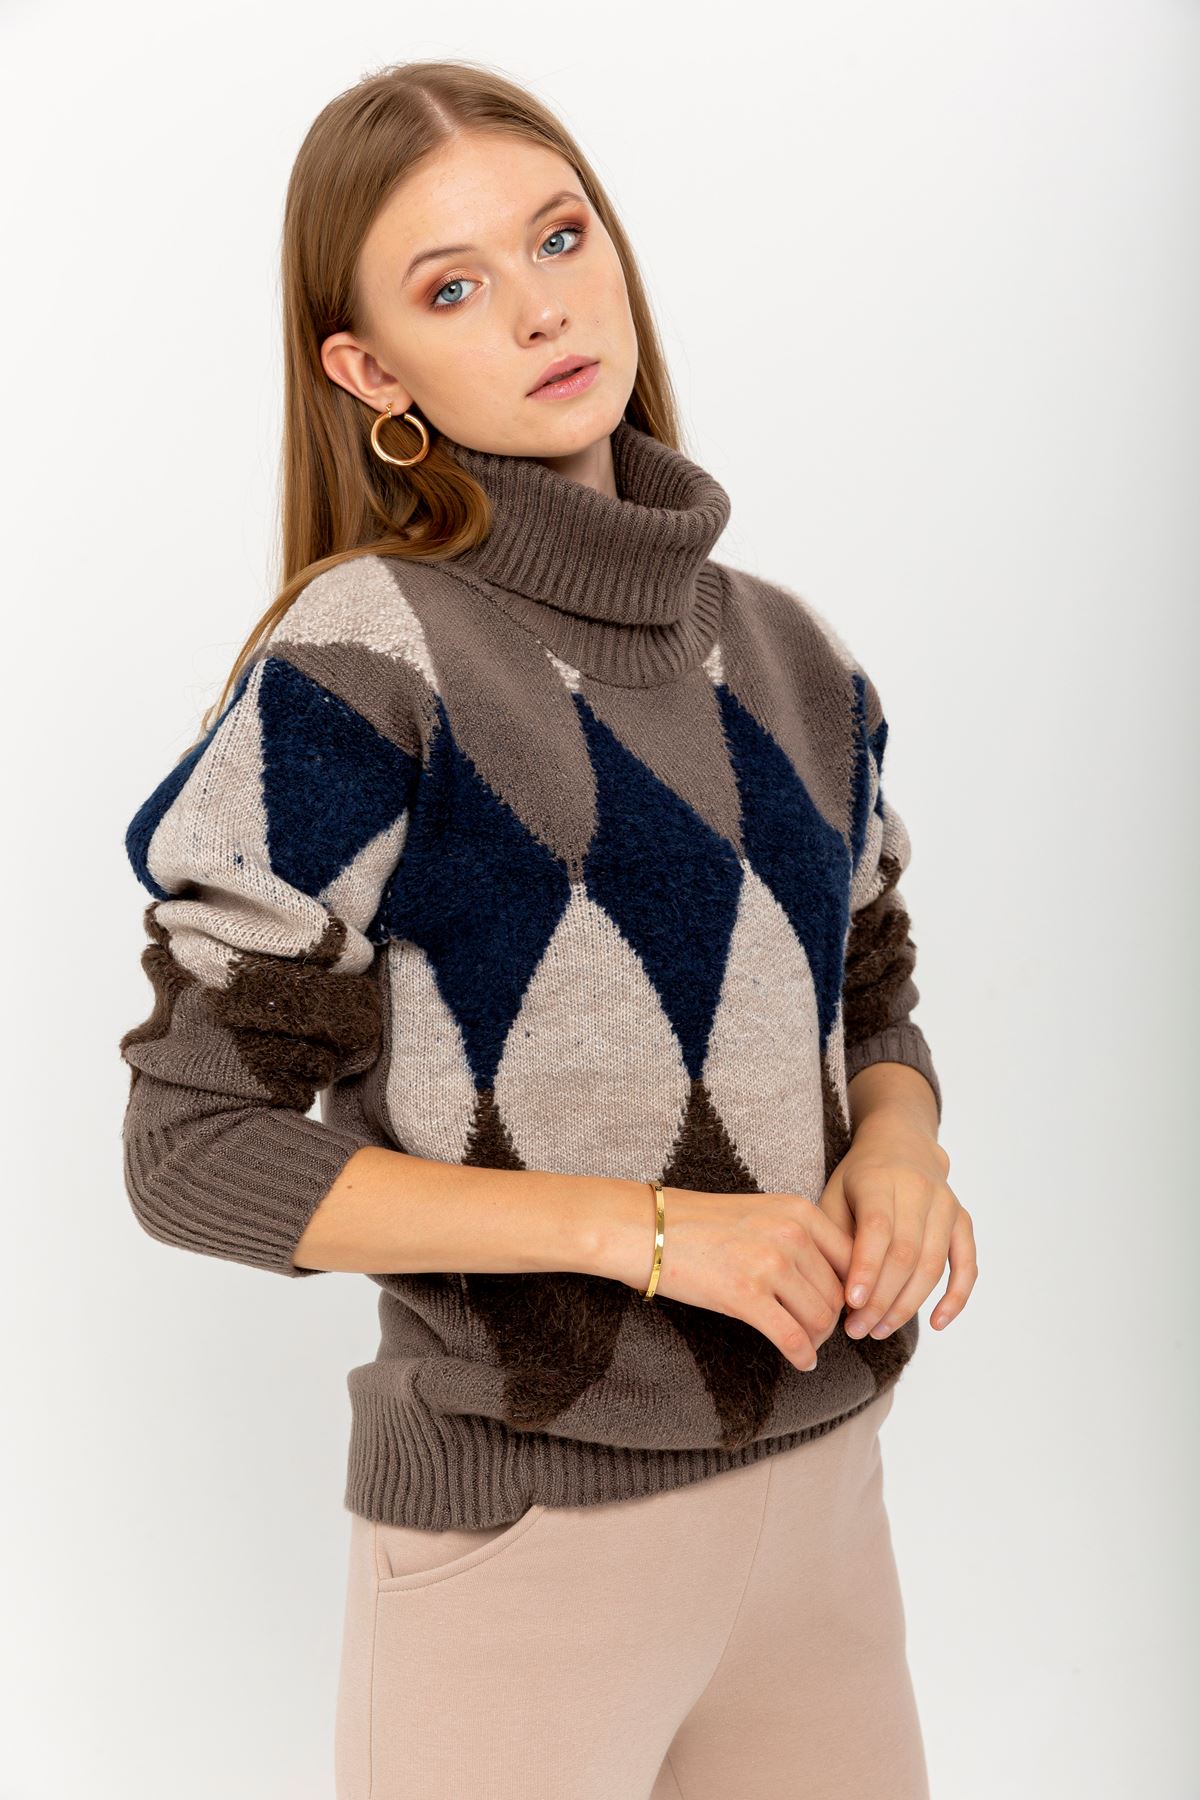 Knitwear Fabric Long Sleeve Turtle Neck Geometric Pattern Women Sweater - Light Brown